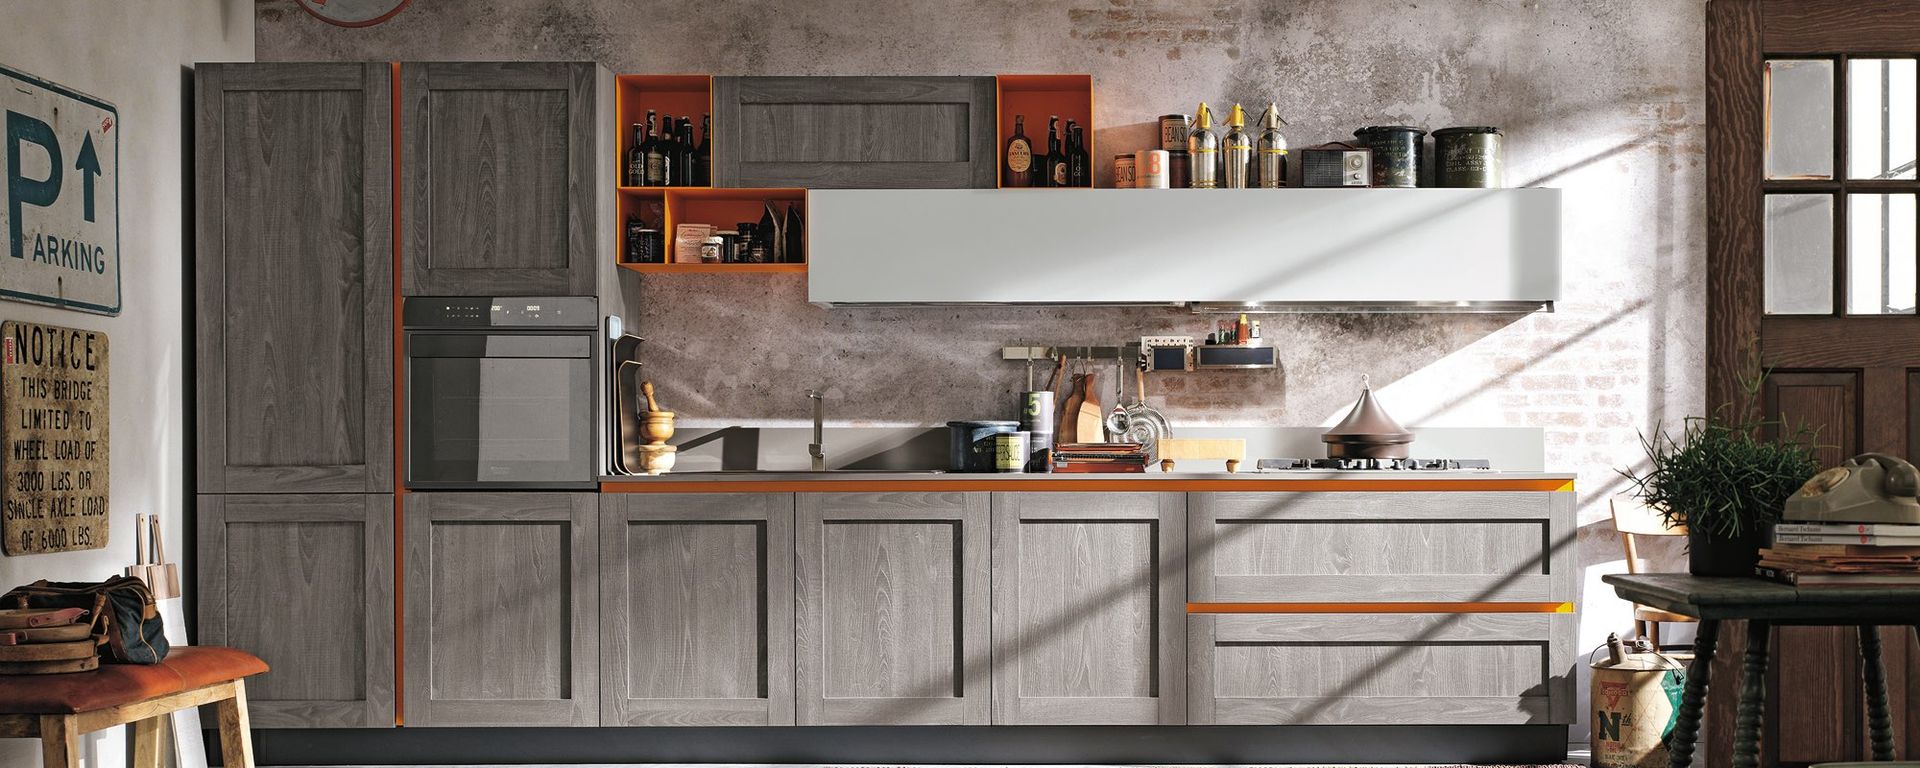 vista frontale di una cucina moderna in legno con mobili in legno